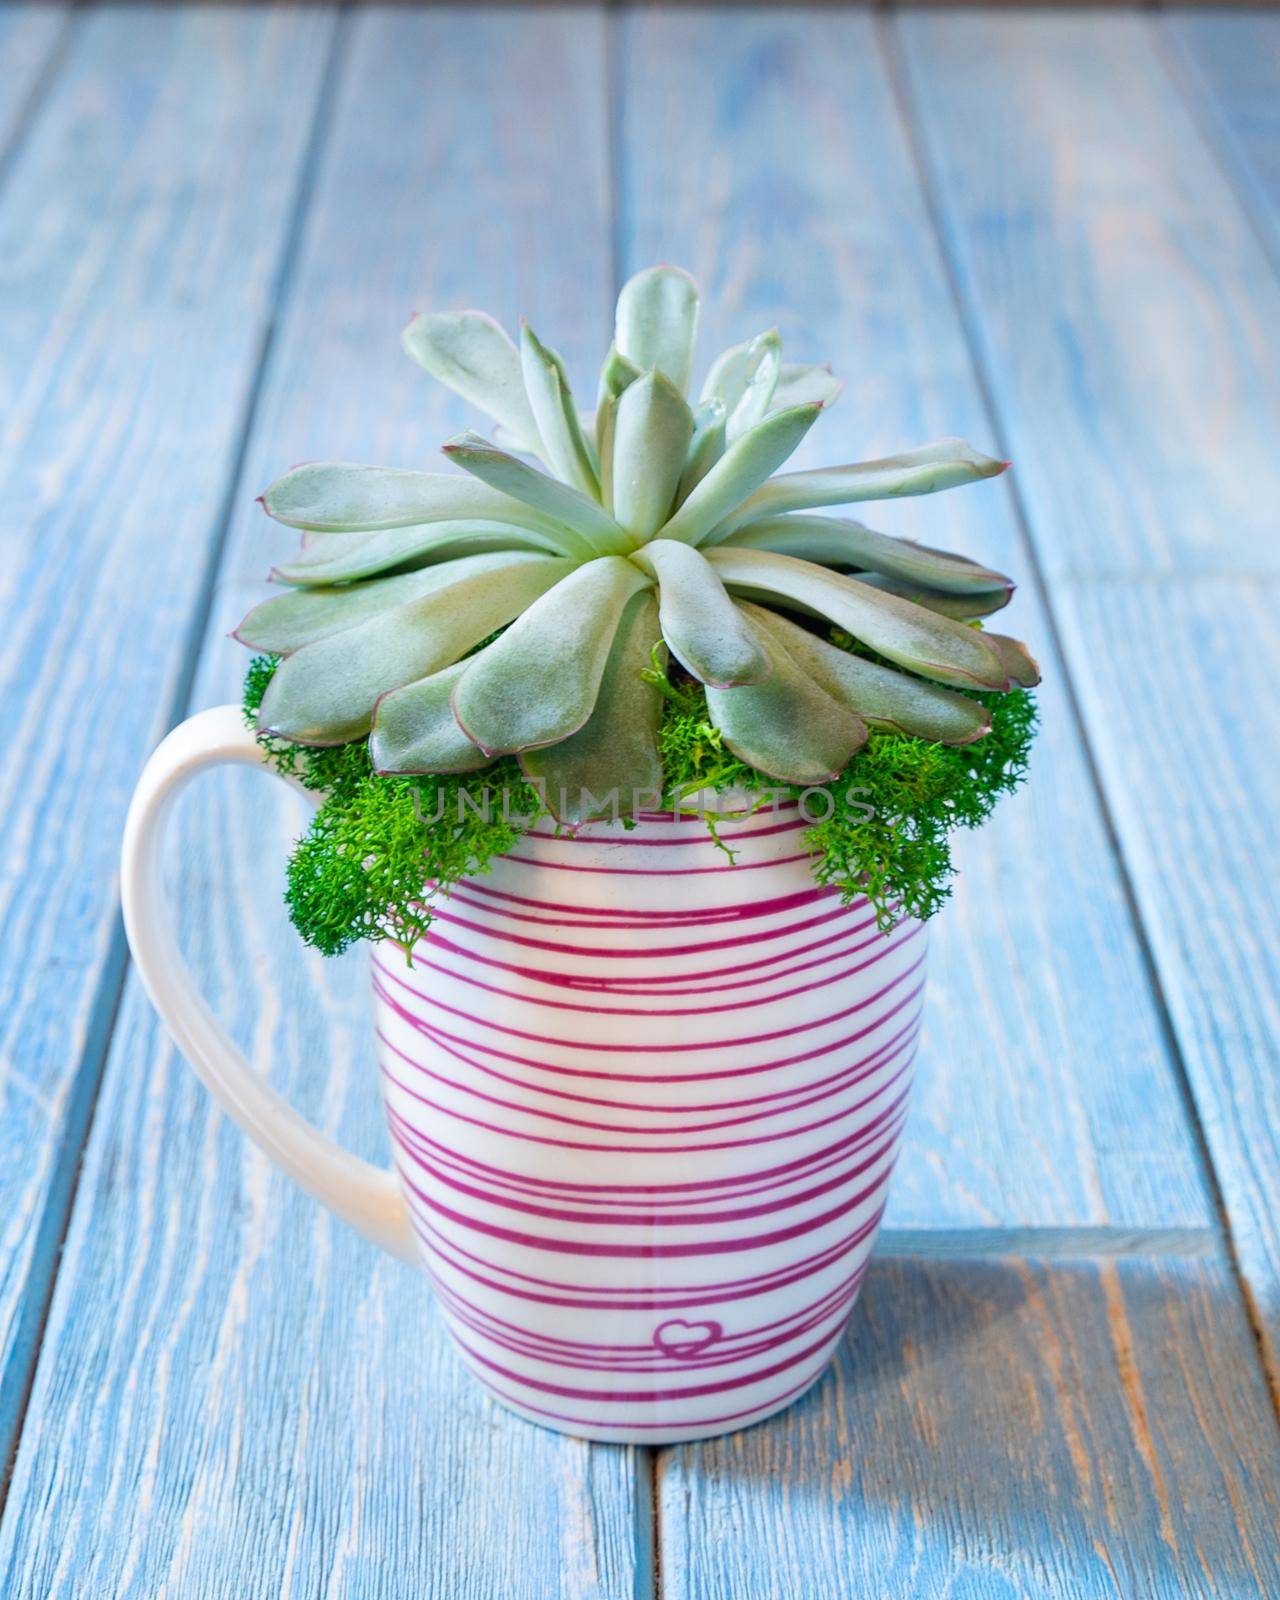 Terrarium, sand, rock, succulent, cactus, moss in the mug, cup